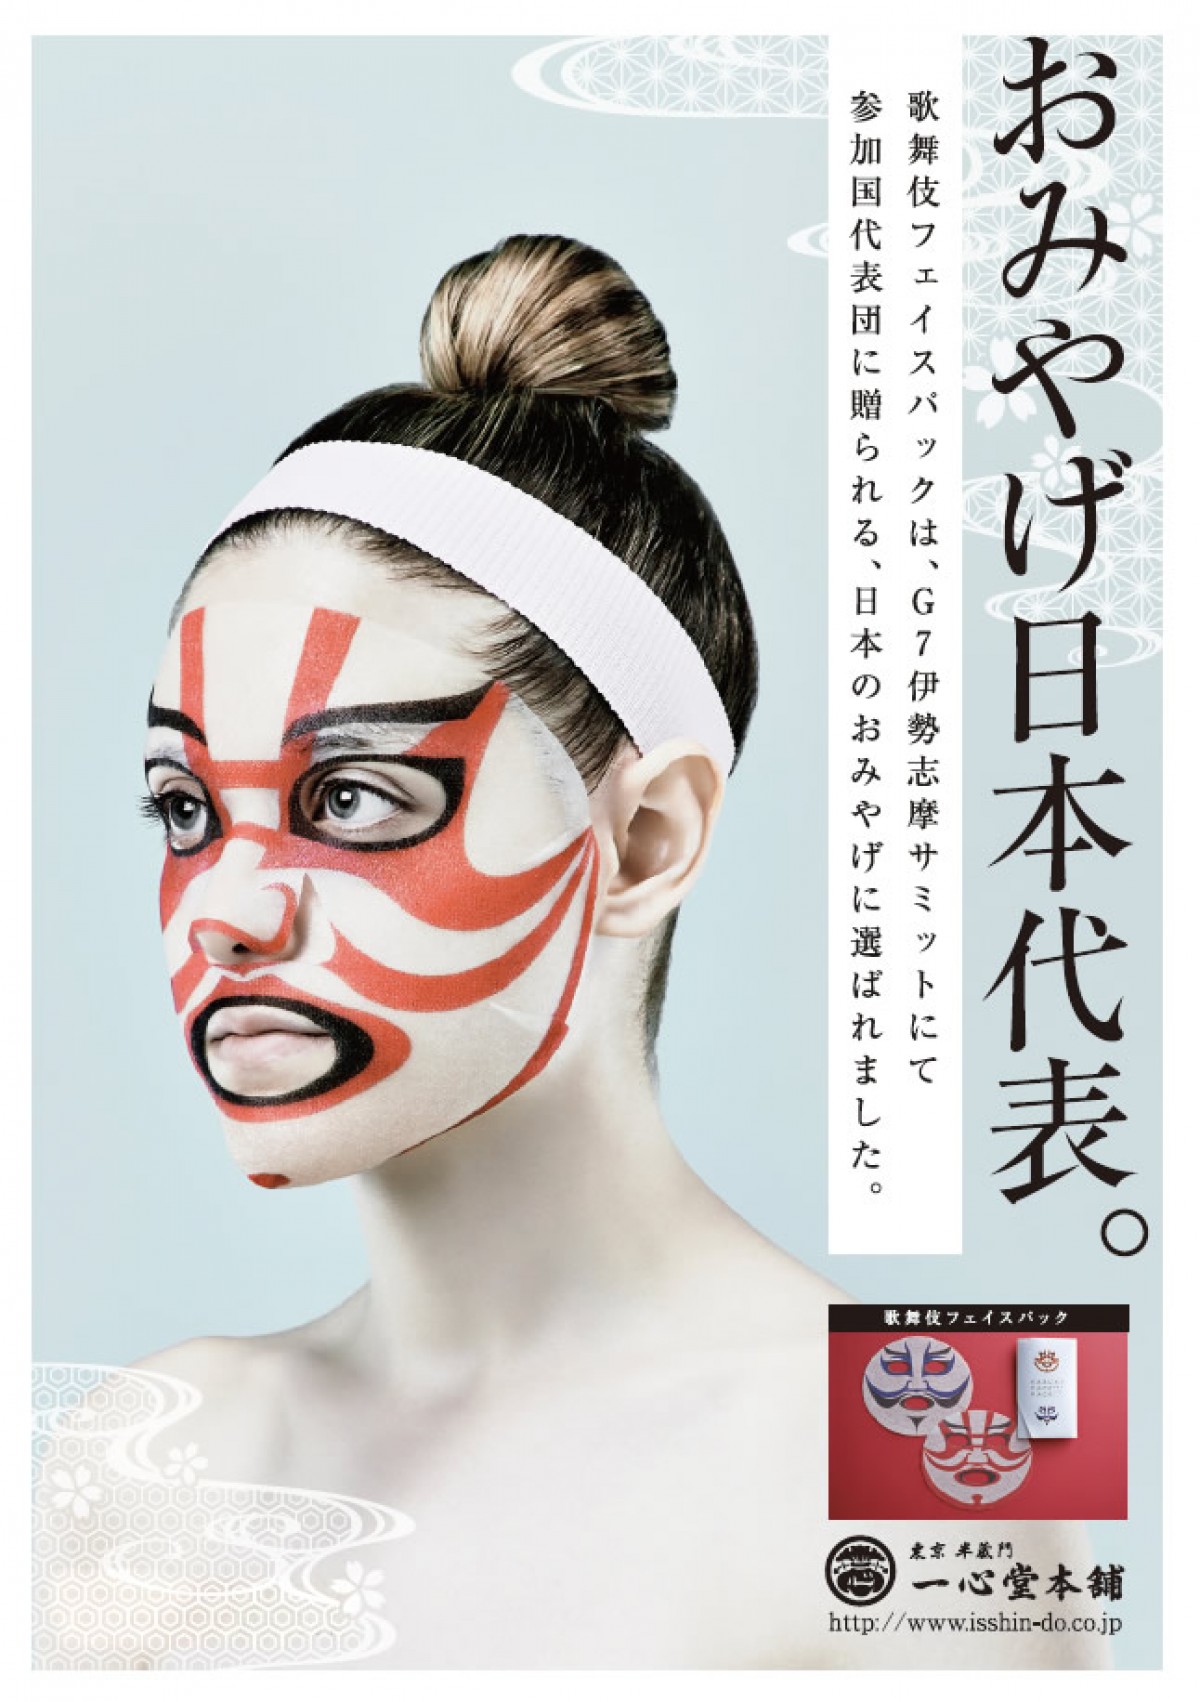 歌舞伎フェイスパック G7伊勢志摩サミットで おみやげ日本代表 に選定 16年5月25日 気になる ニュース クランクイン